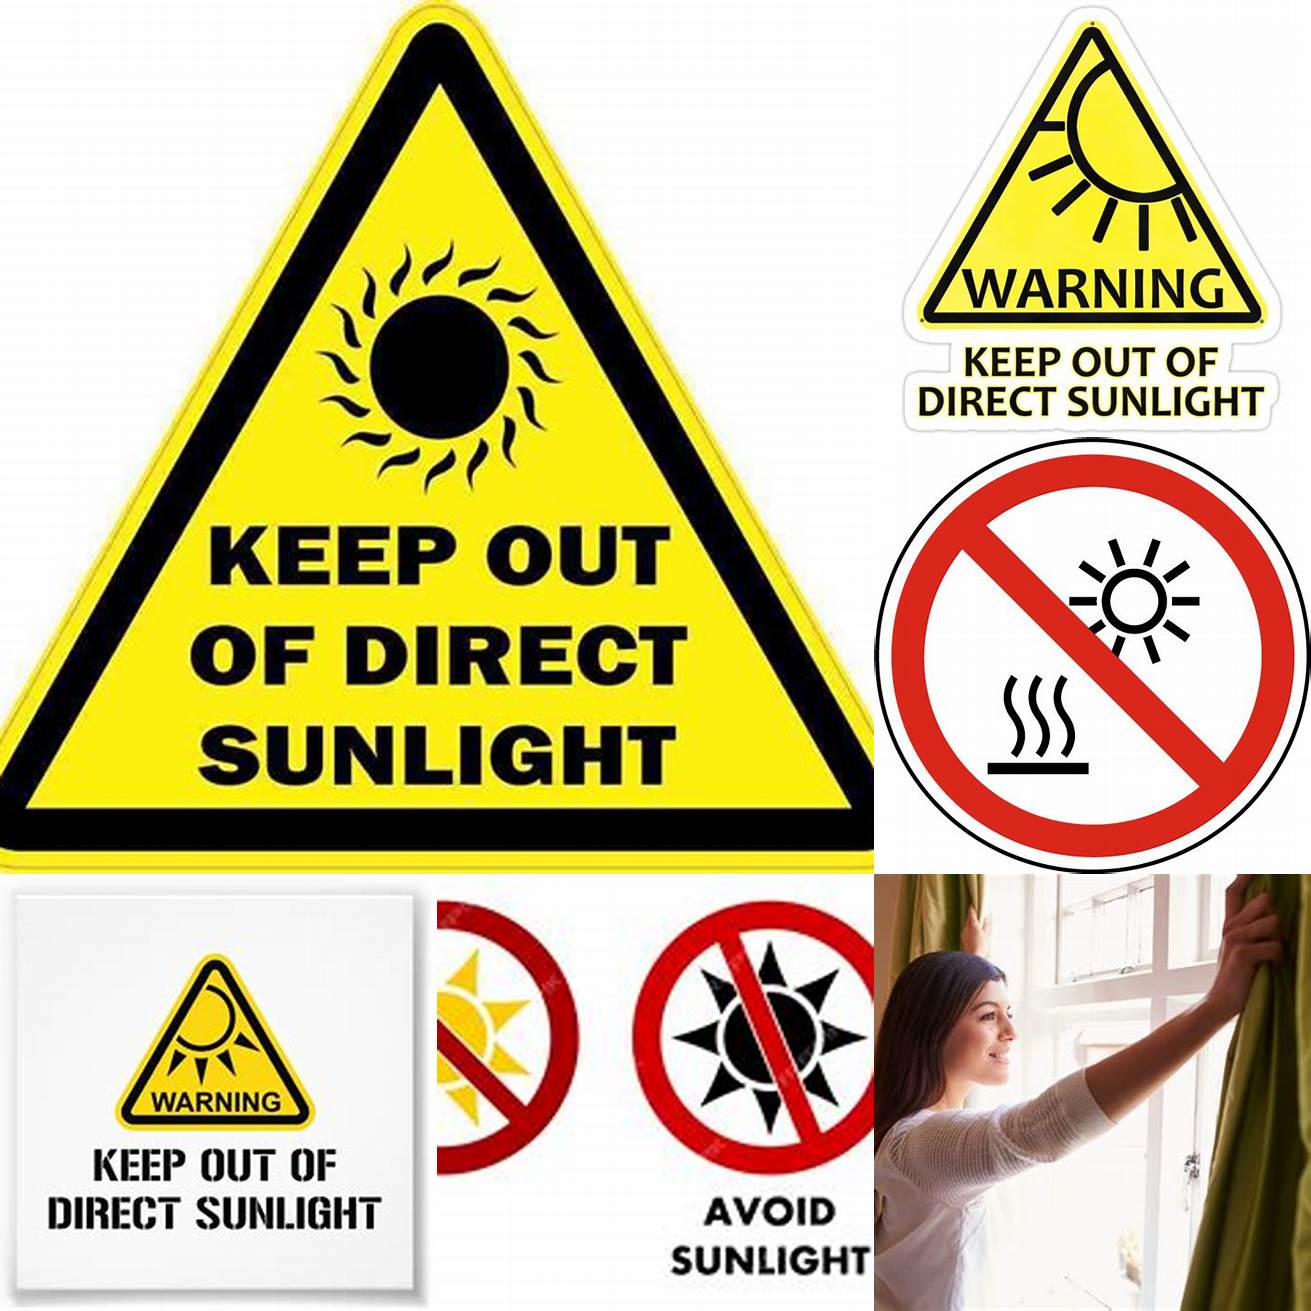 Avoid direct sunlight and heat